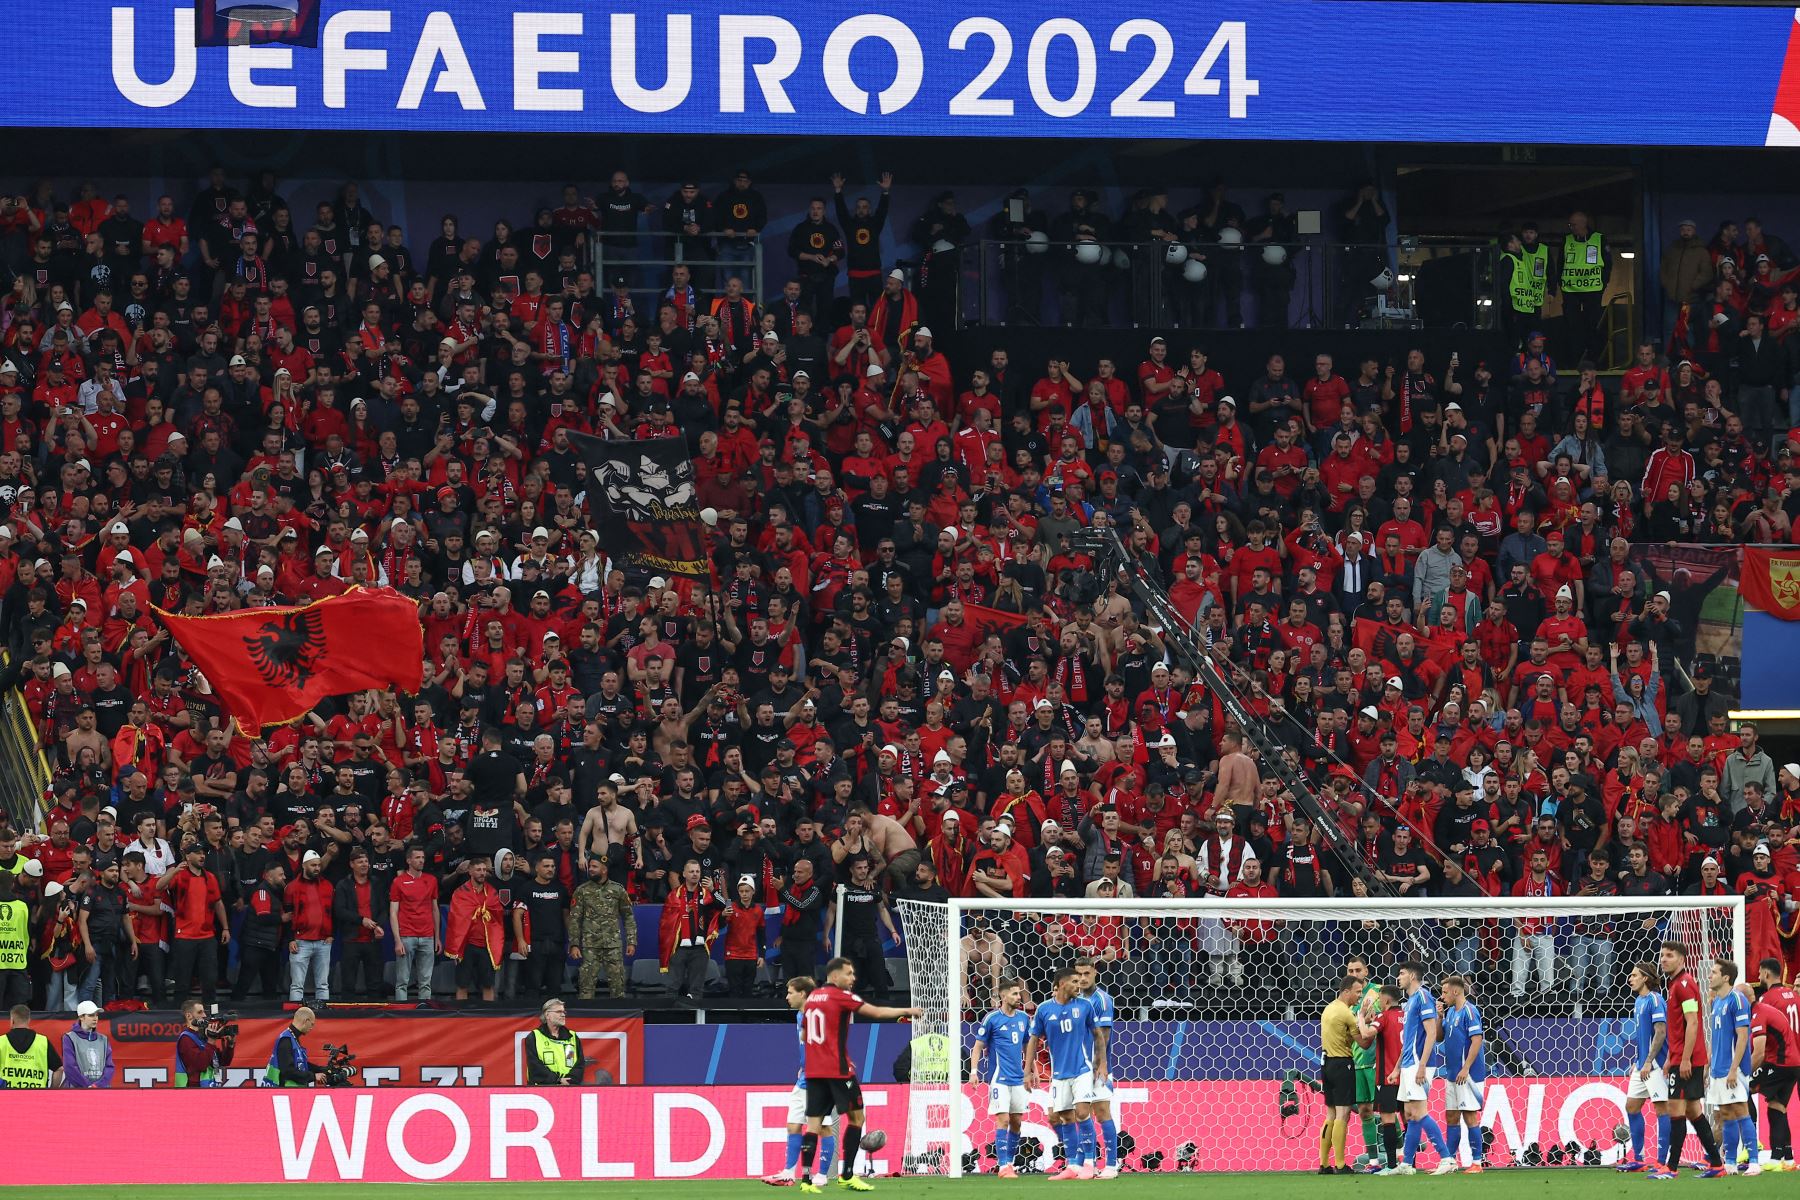 Los seguidores de Albania asisten al partido de fútbol del Grupo B de la UEFA Euro 2024 entre Italia y Albania en el BVB Stadion de Dortmund.
Foto: AFP